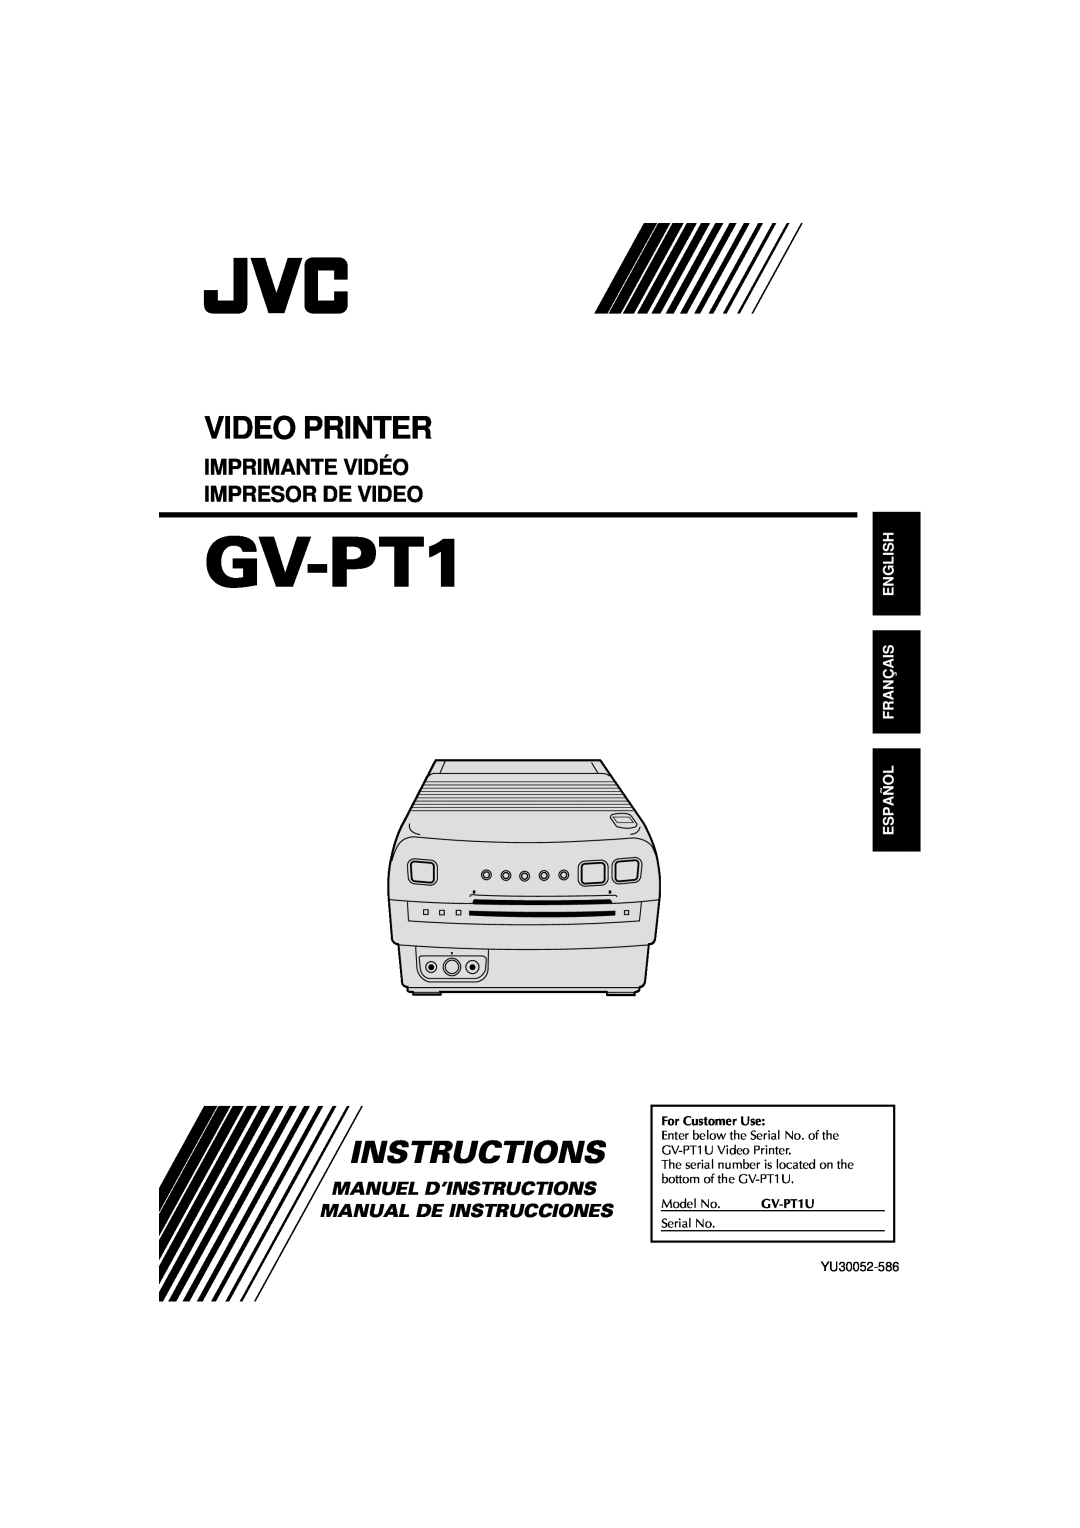 JVC GV-PT1 manual Video Printer, Instructions, Imprimante Vidéo Impresor De Video, Español Français English, Model No 